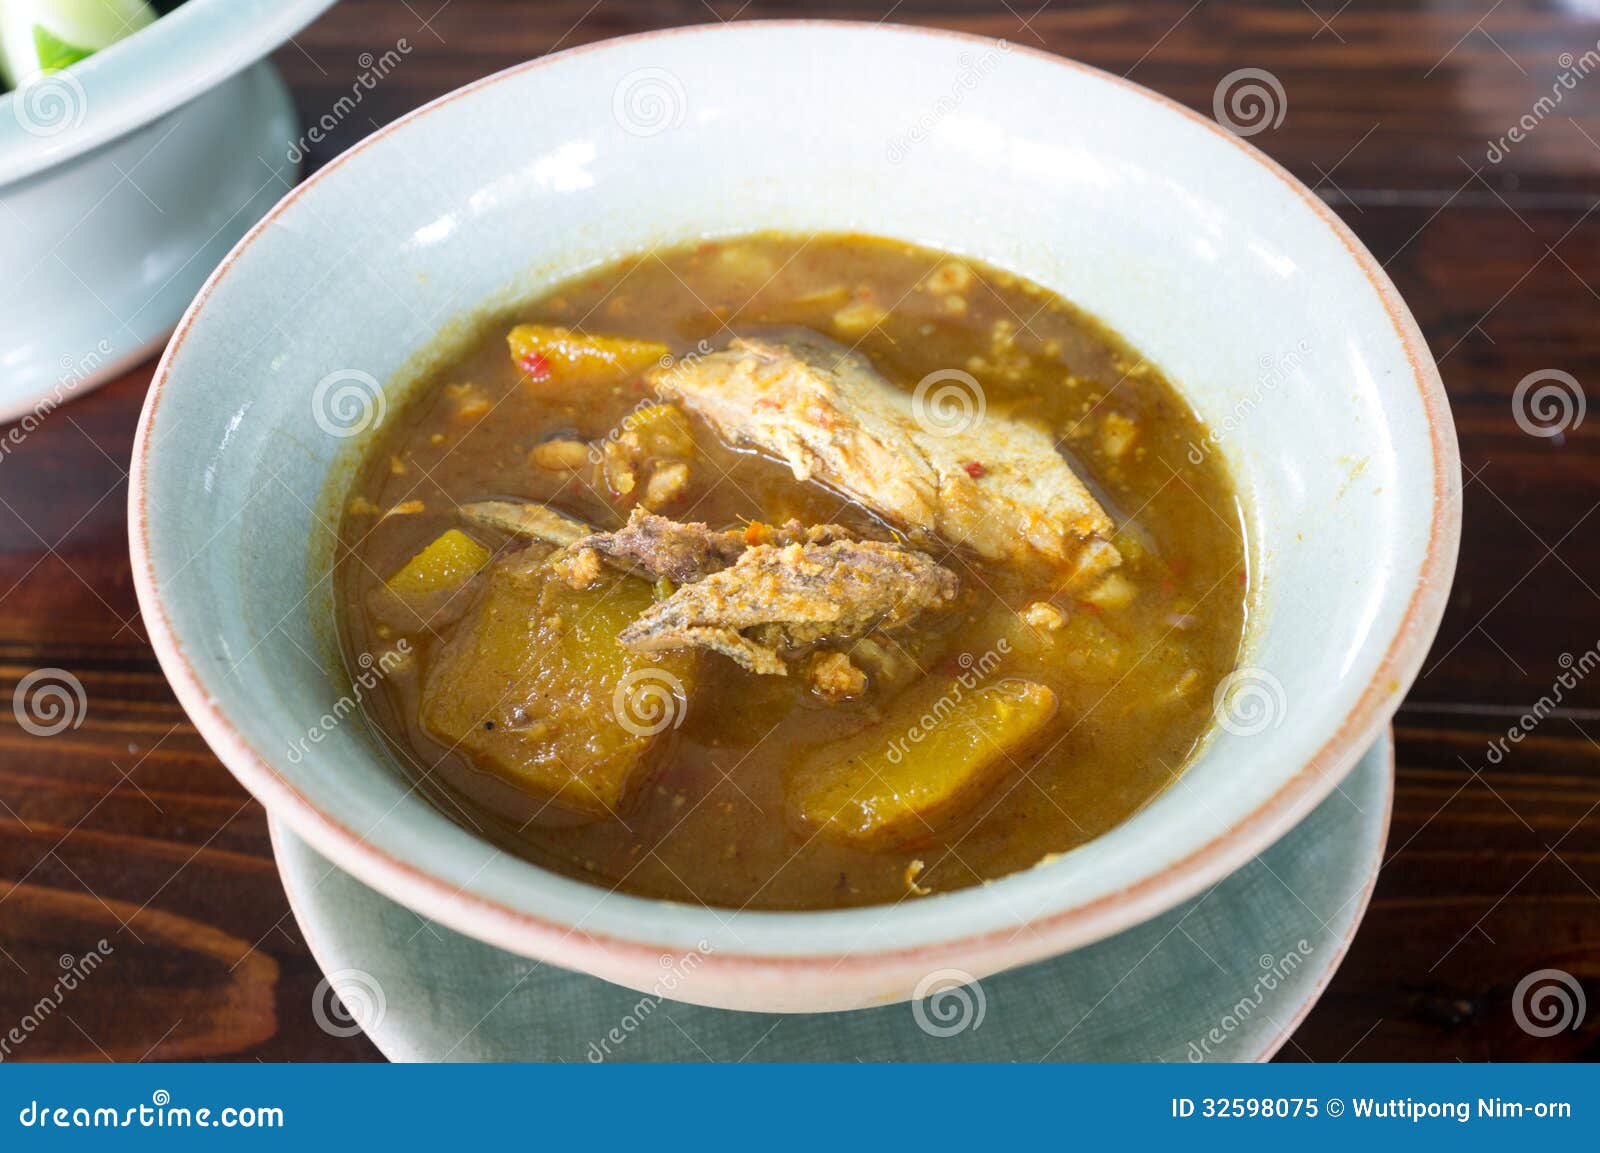 在泰国米线咖喱鱼成份南部 库存图片. 图片 包括有 菠萝, 烹调, 膳食, 泰国, 可口, 食物, 文化 - 48542207